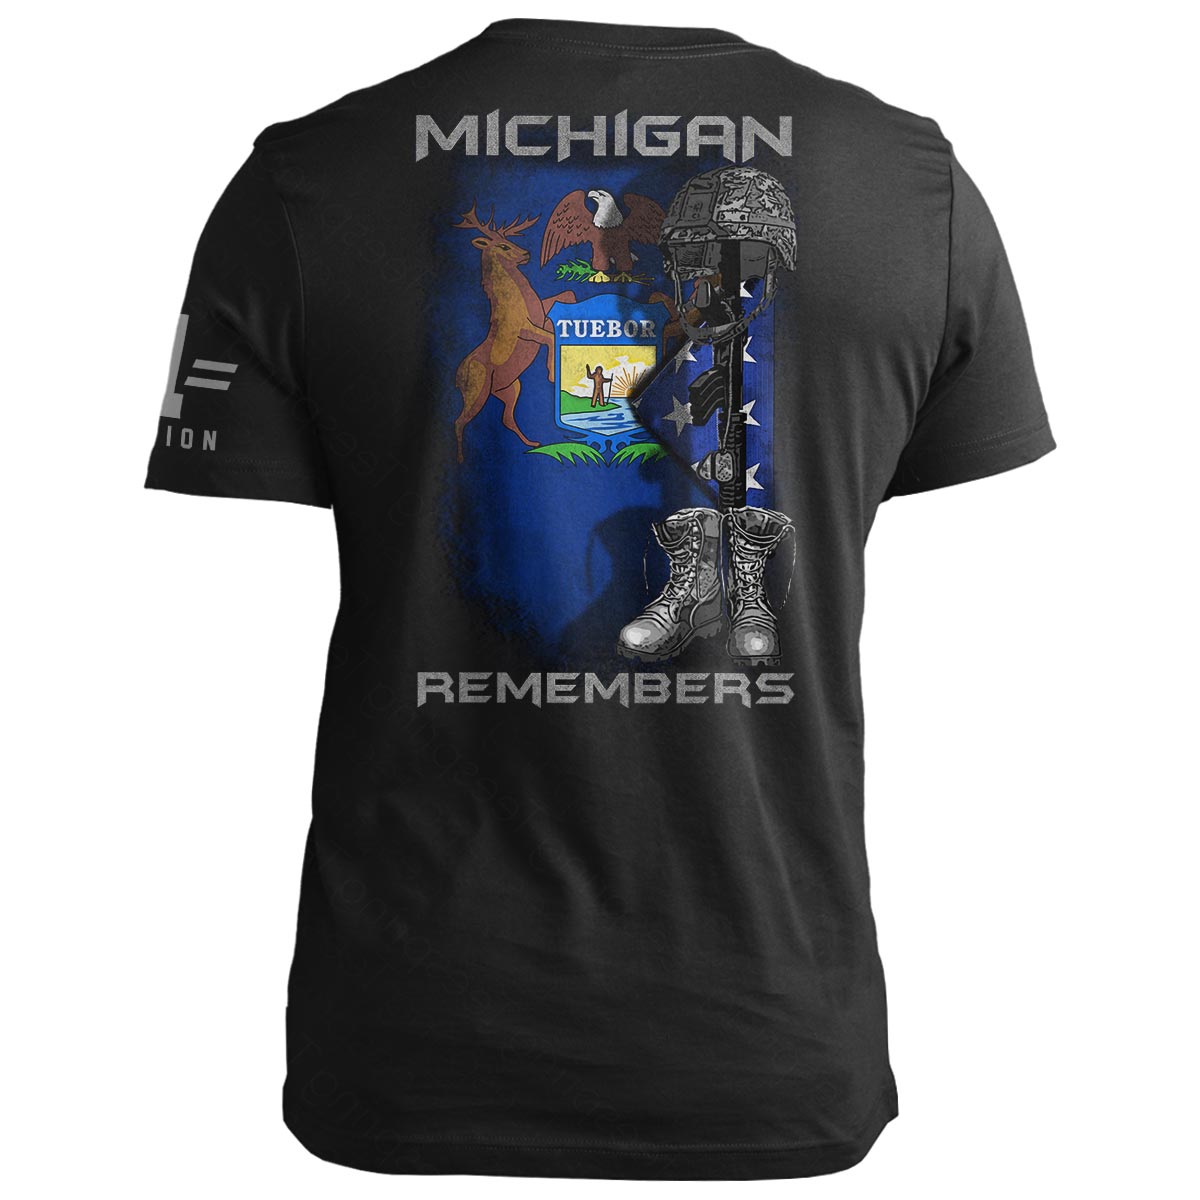 Michigan Remembers